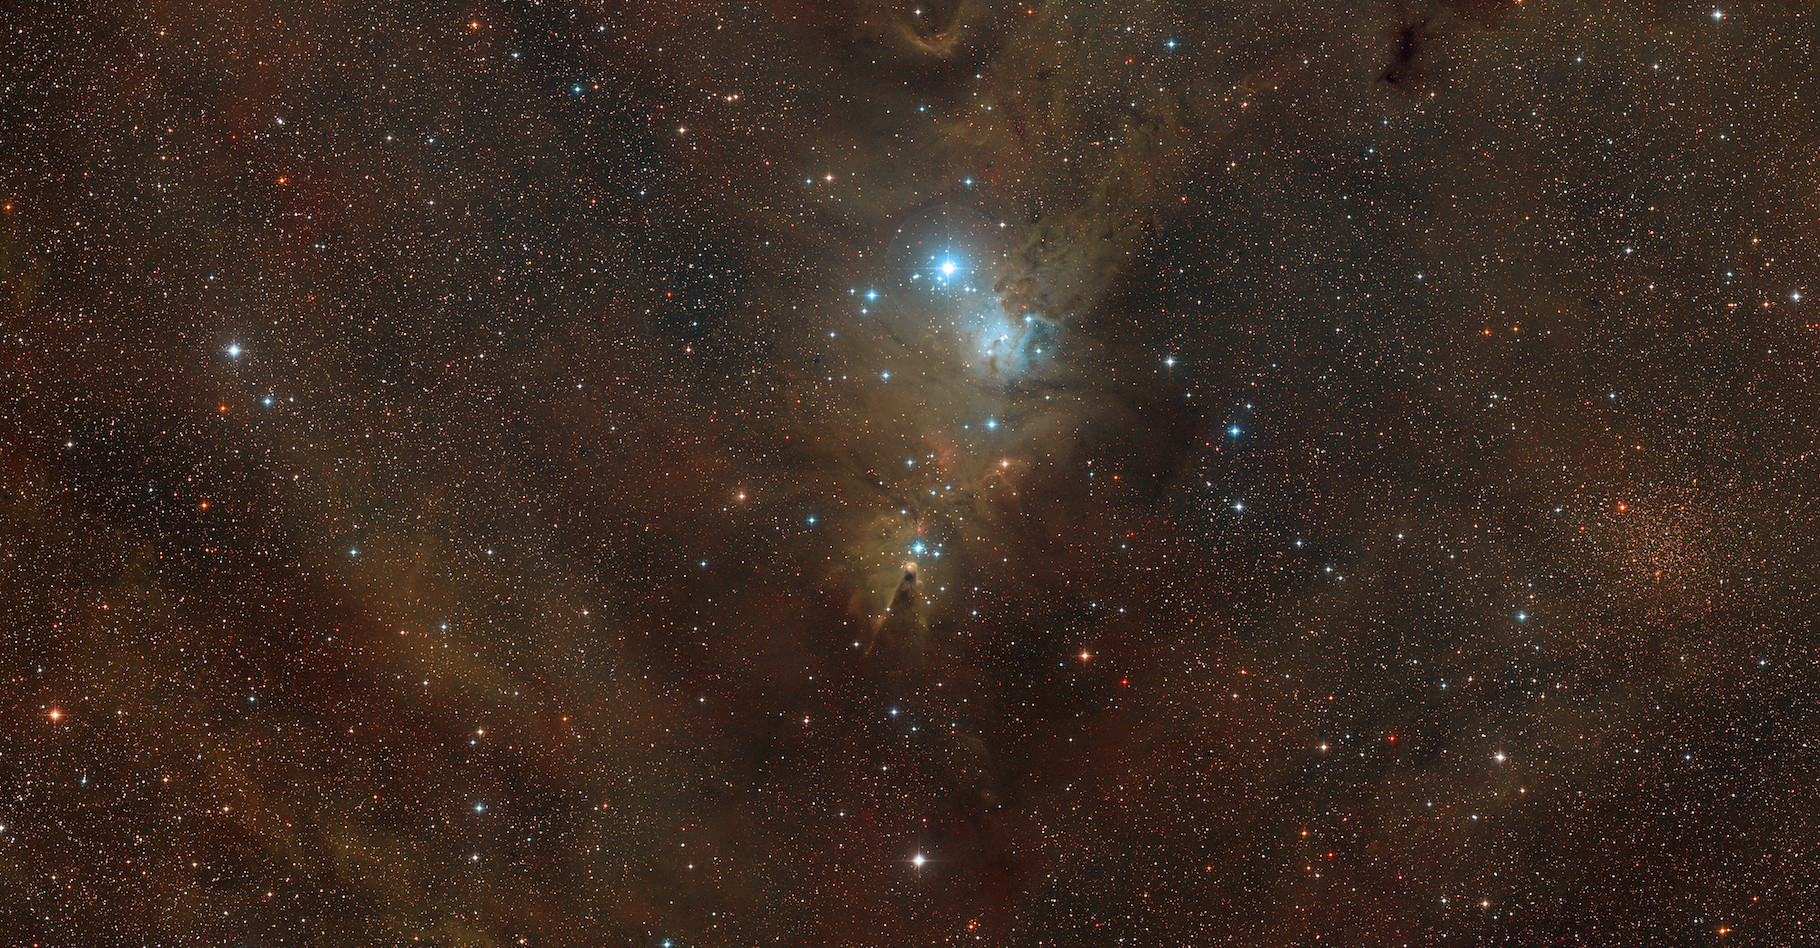 Pour fêter ses 60 ans, l’European Southern Observatory (ESO) dévoile une magnifique image de la nébuleuse du Cône que l’on devine au centre de cette photo grand champ. © ESO, Digitized Sky Survey 2, D. De Martin